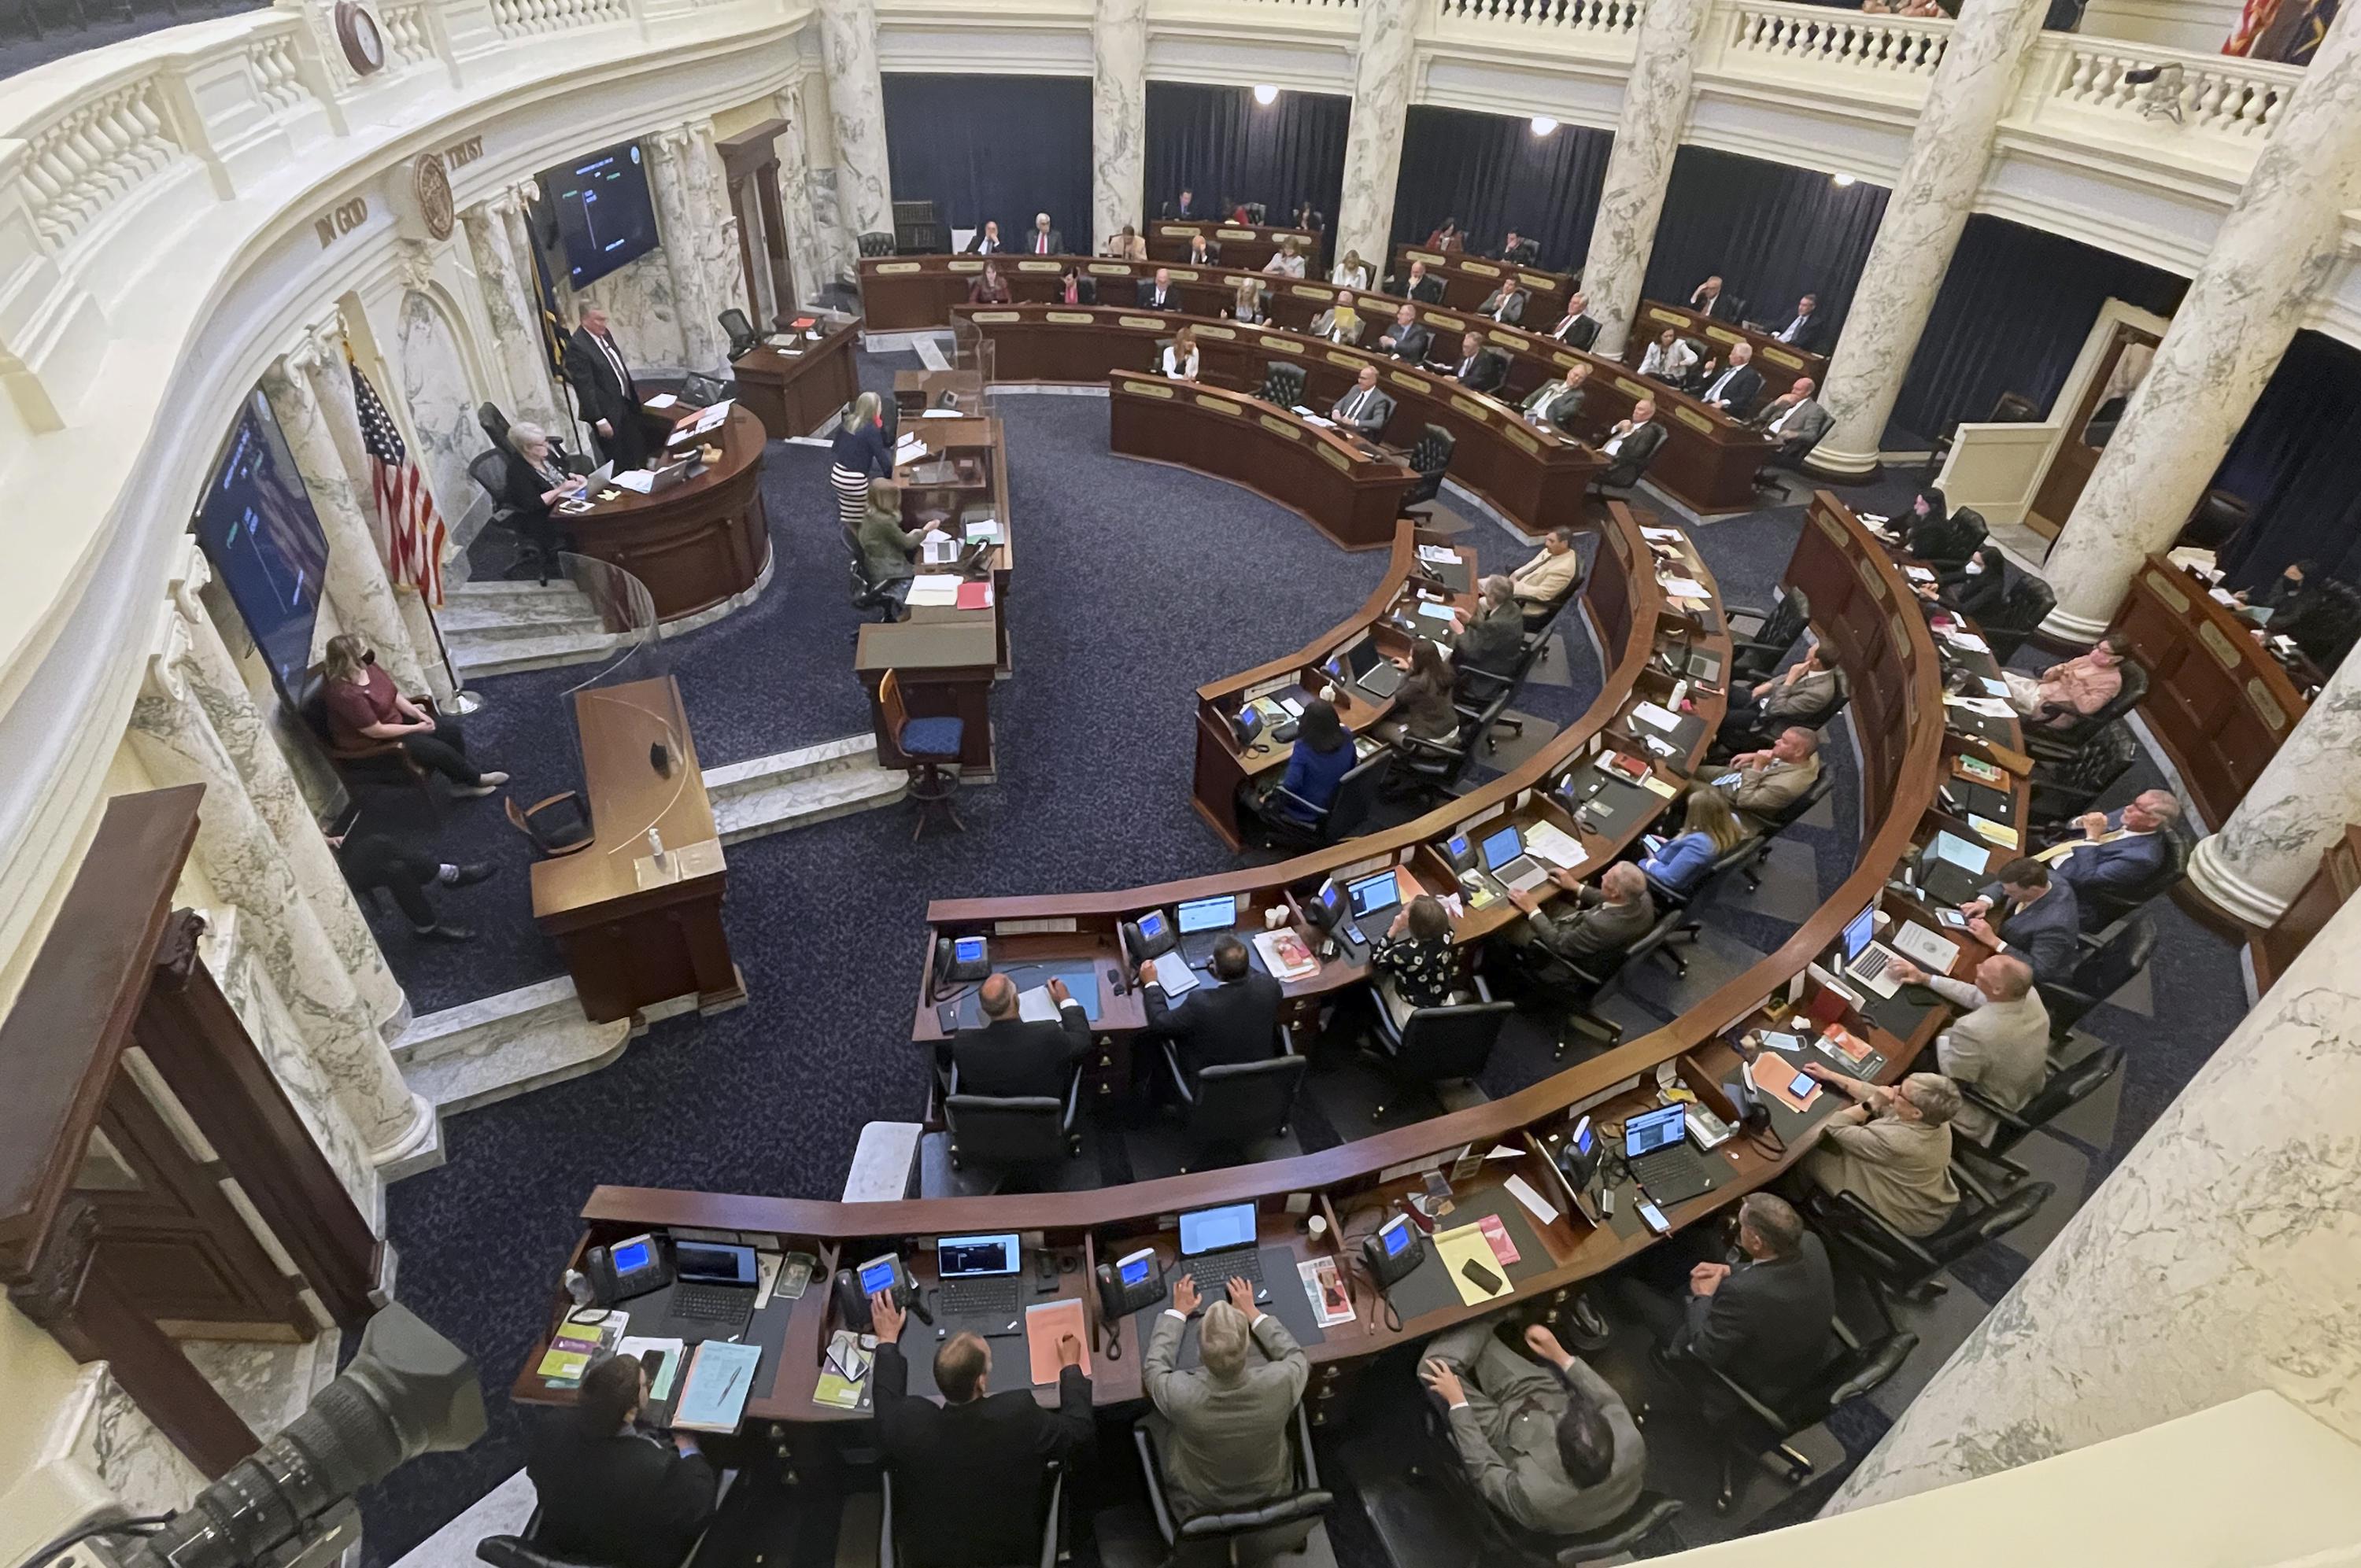 Differing views emerge on Idaho legislative session AP News